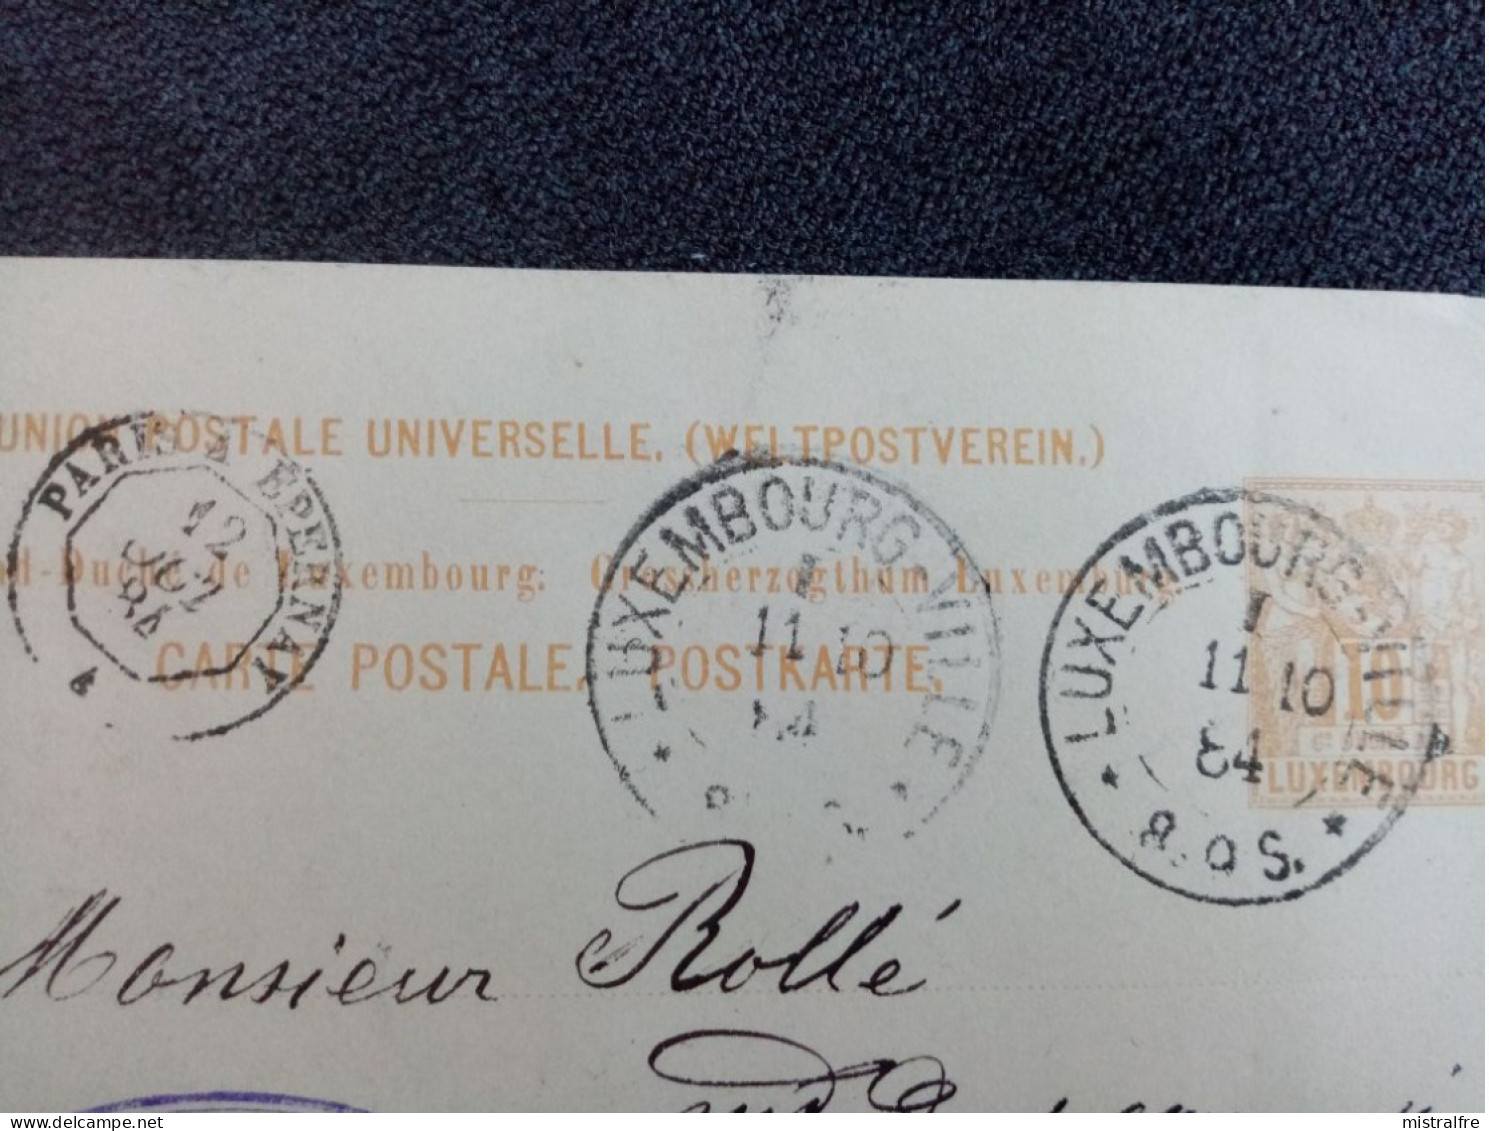 LUXEMBOURG. 1884. Carte Postale De Luxembourg à Chalon Sur Marne Via Paris. Exp L.M MICHEL " Cuirs Et Peaux " - Stamped Stationery